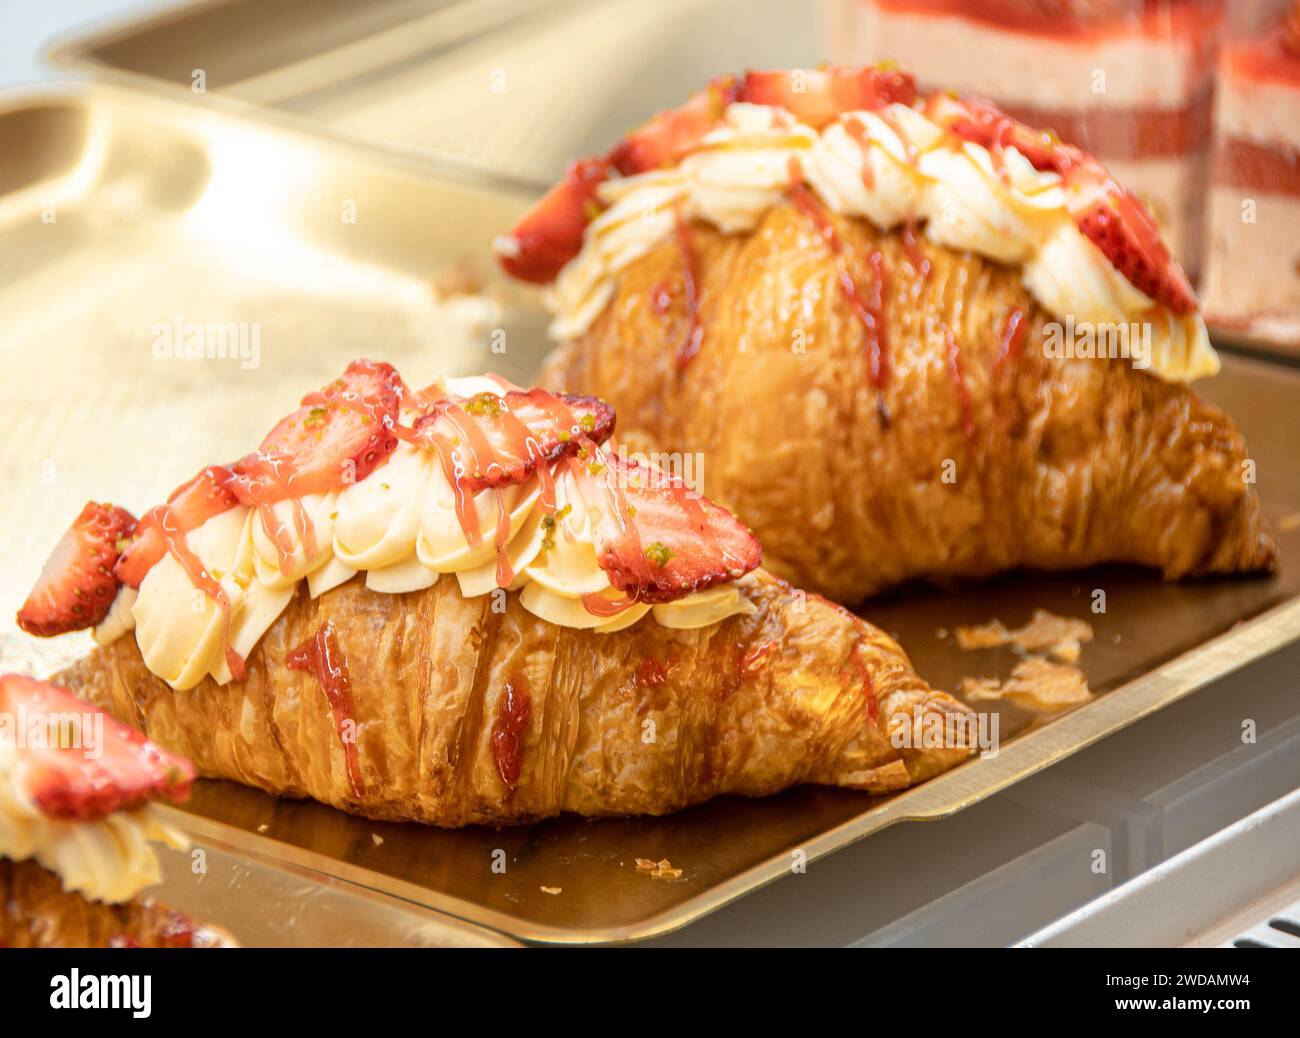 Le pain aux fraises de forme exquise est placé sur un plateau en acier, éclairé par des lumières chaudes, et est très délicieux. Banque D'Images